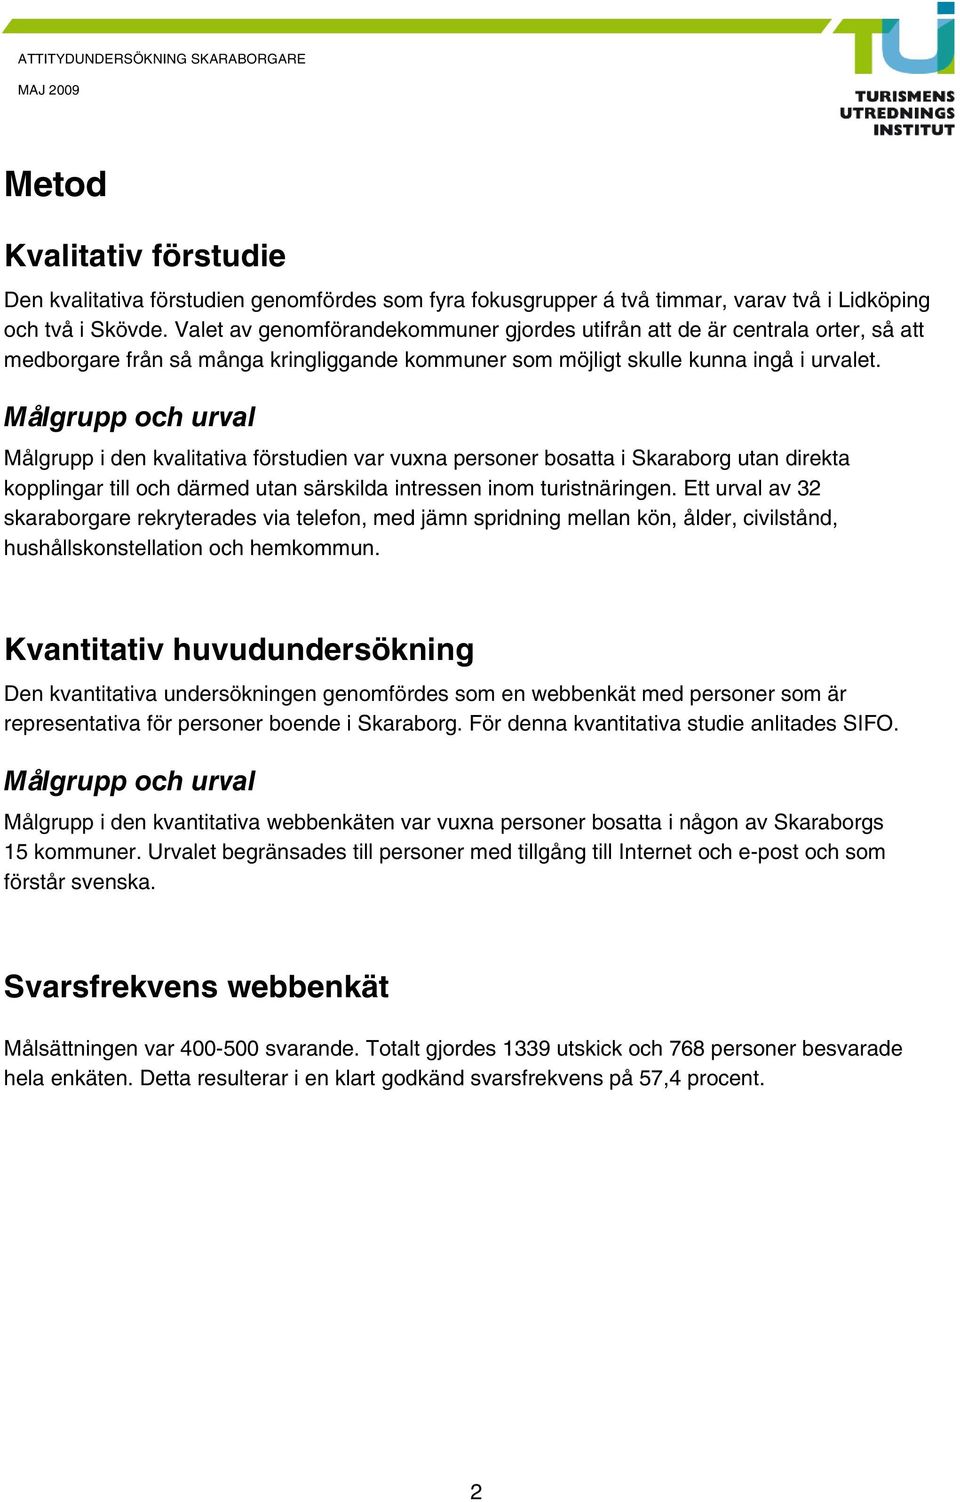 Målgrupp och urval Målgrupp i den kvalitativa förstudien var vuxna personer bosatta i Skaraborg utan direkta kopplingar till och därmed utan särskilda intressen inom turistnäringen.